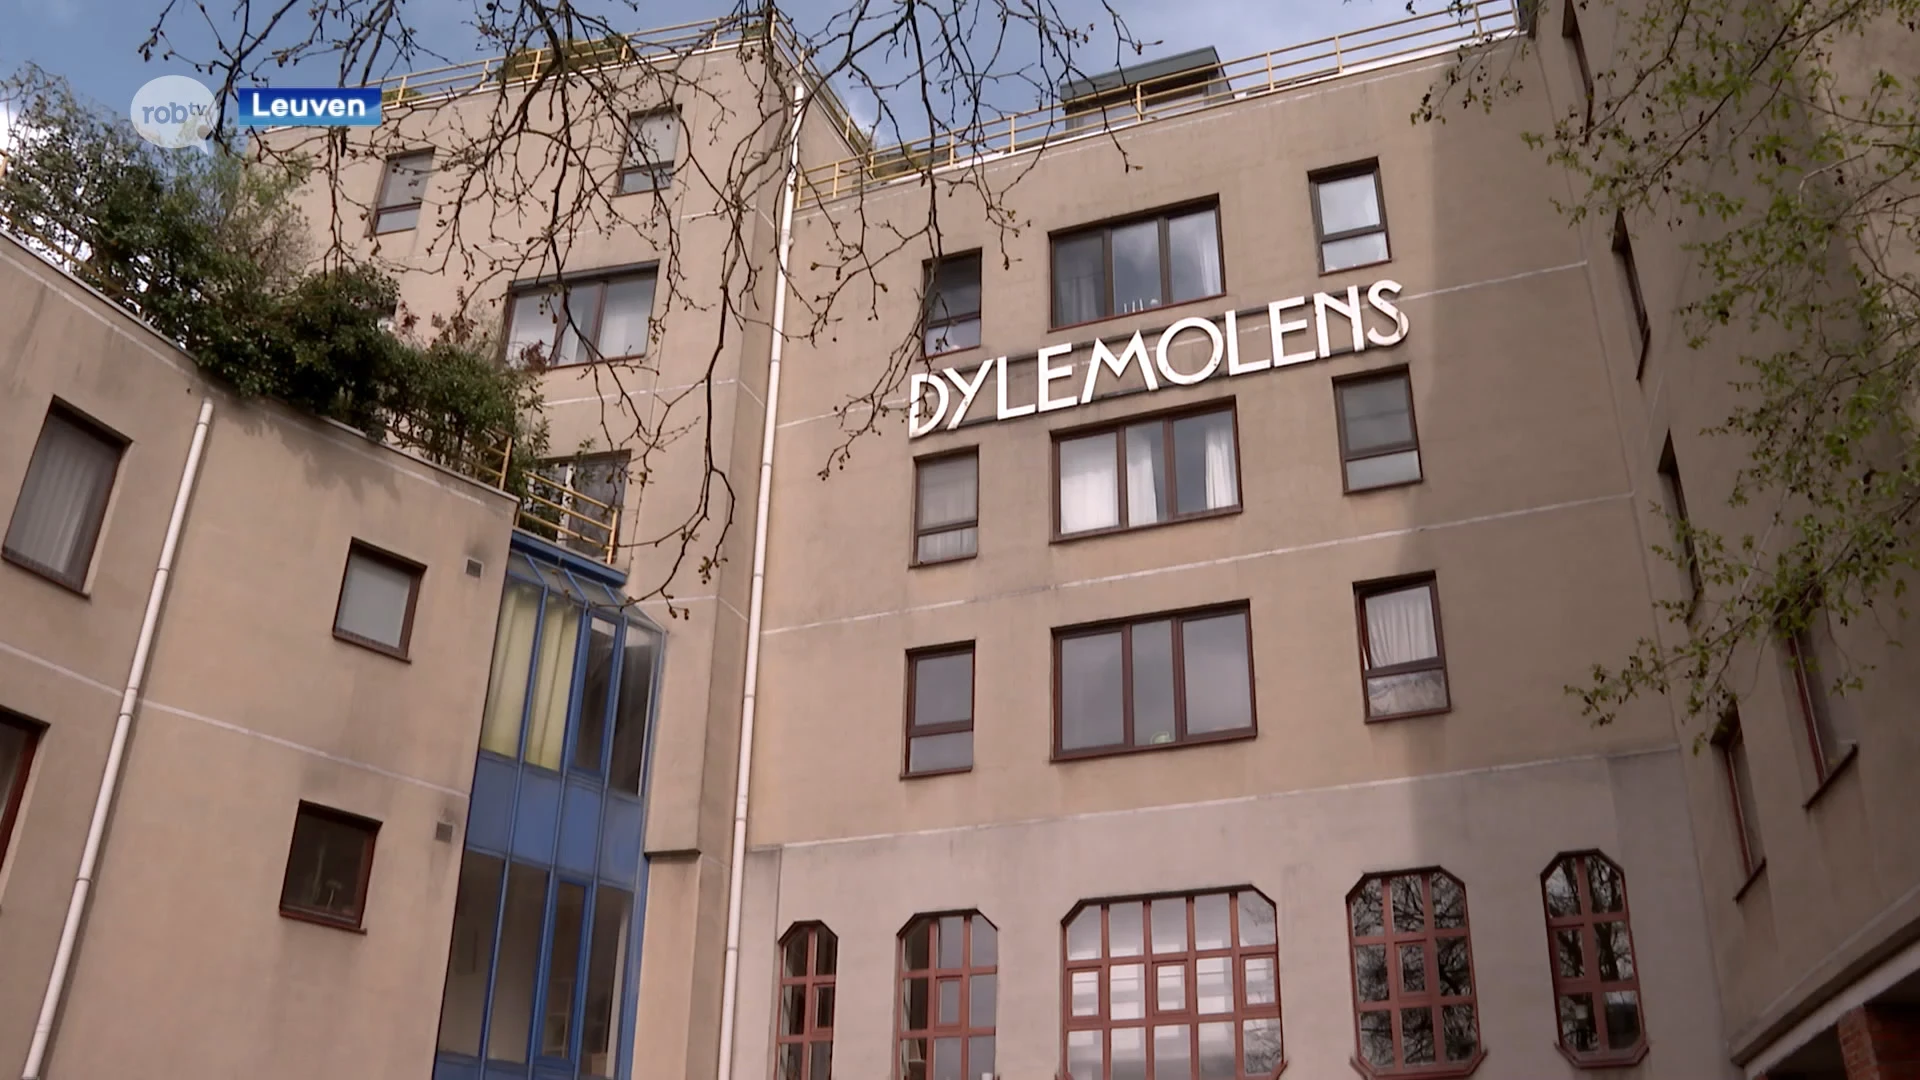 Bewoners van Dijlemolens in Leuven verwarmen appartementsgebouw met water uit Dijle